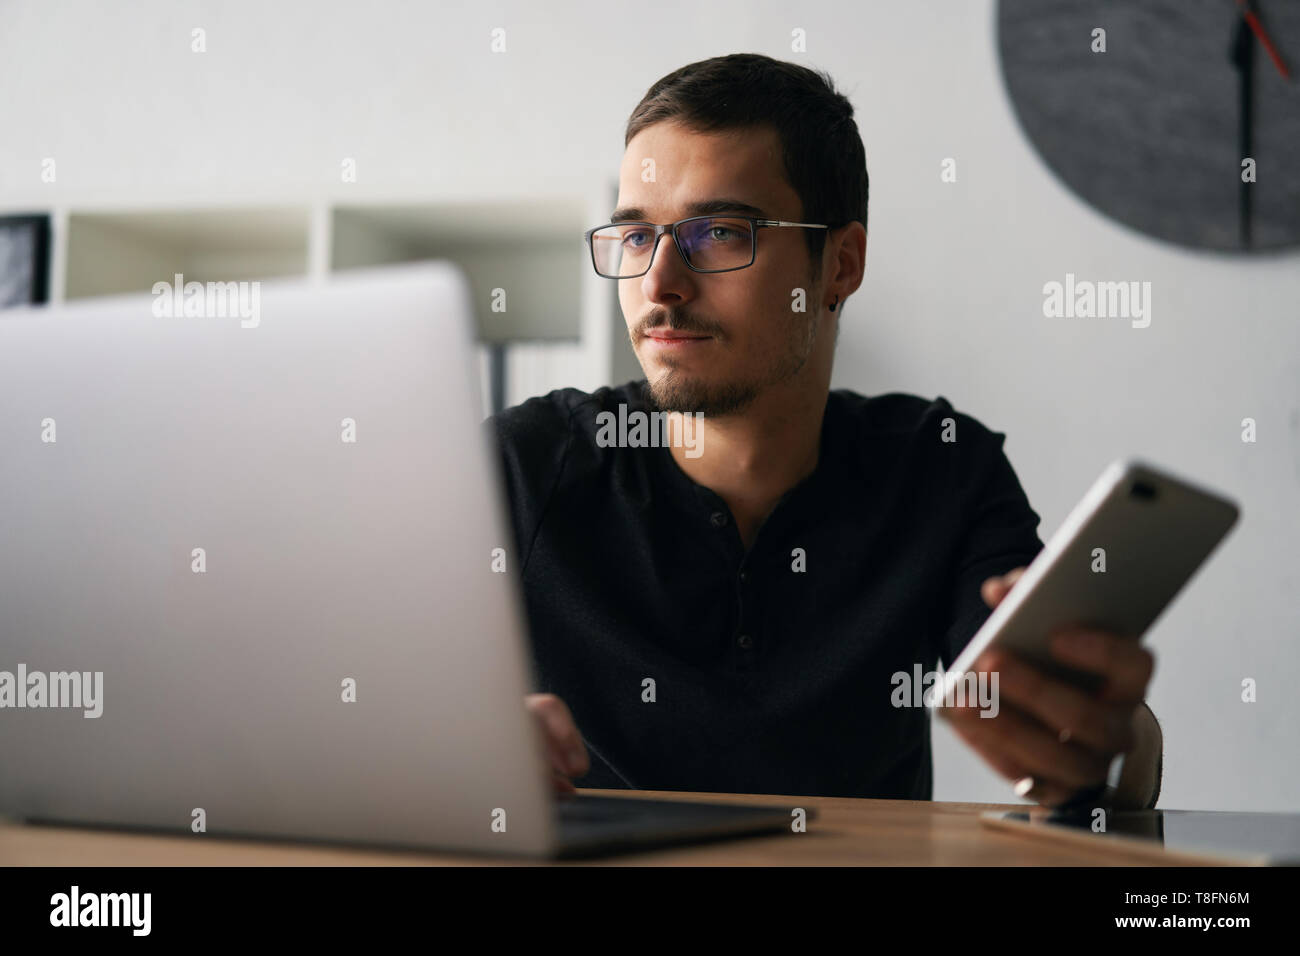 Jeune homme travaillant avec téléphone et ordinateur, réception d'appel téléphonique, parler avec les partenaires Banque D'Images